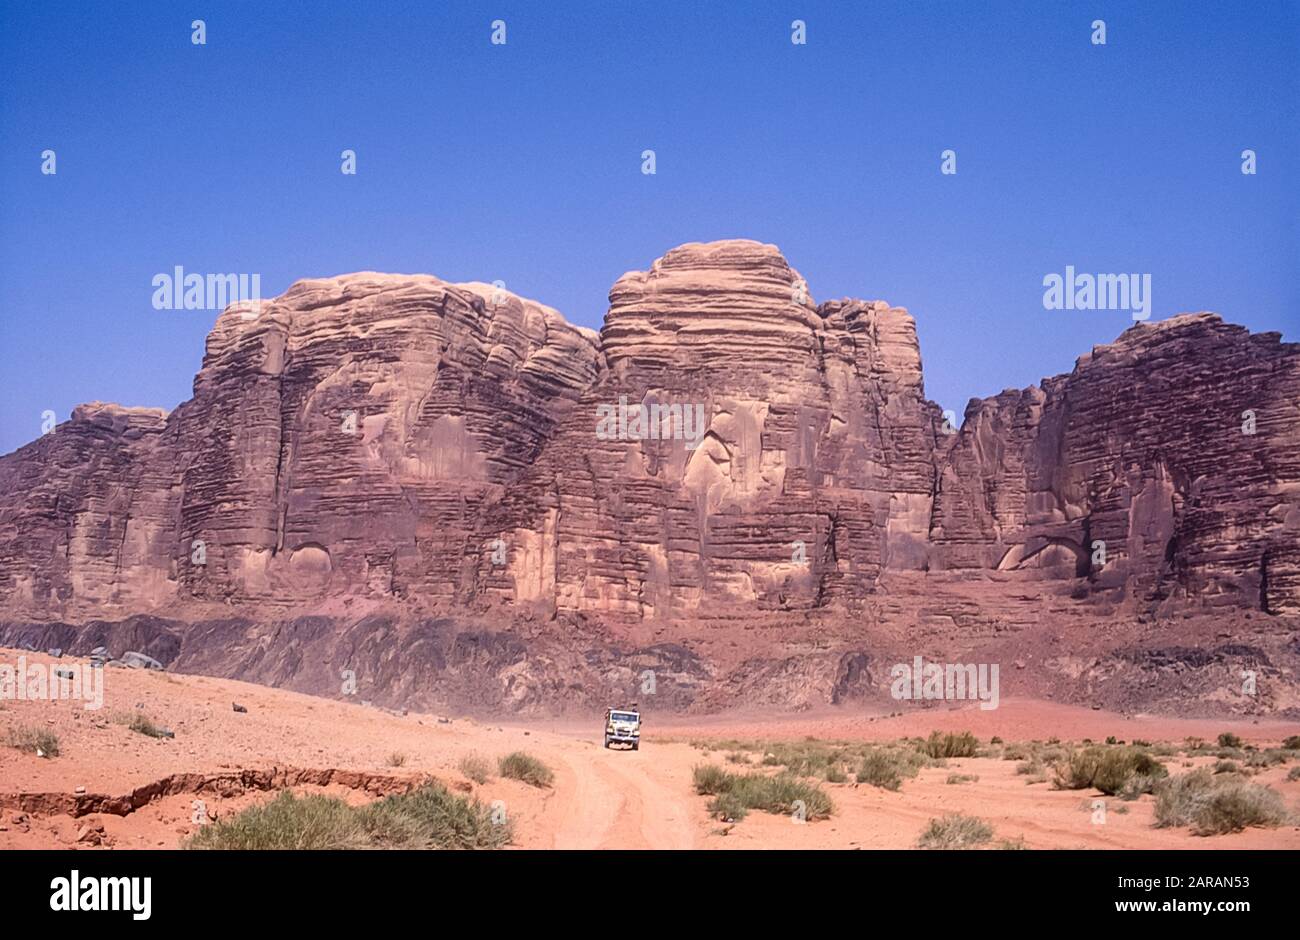 Jordanie. Paysages de montagne du désert aux couleurs vives avec 4 4x4 4x4 touristiques sur le site classé au patrimoine mondial de l'UNESCO de Wadi Rum près du port d'Aqaba dans le sud de la Jordanie associé à Lawrence d'Arabie. Banque D'Images